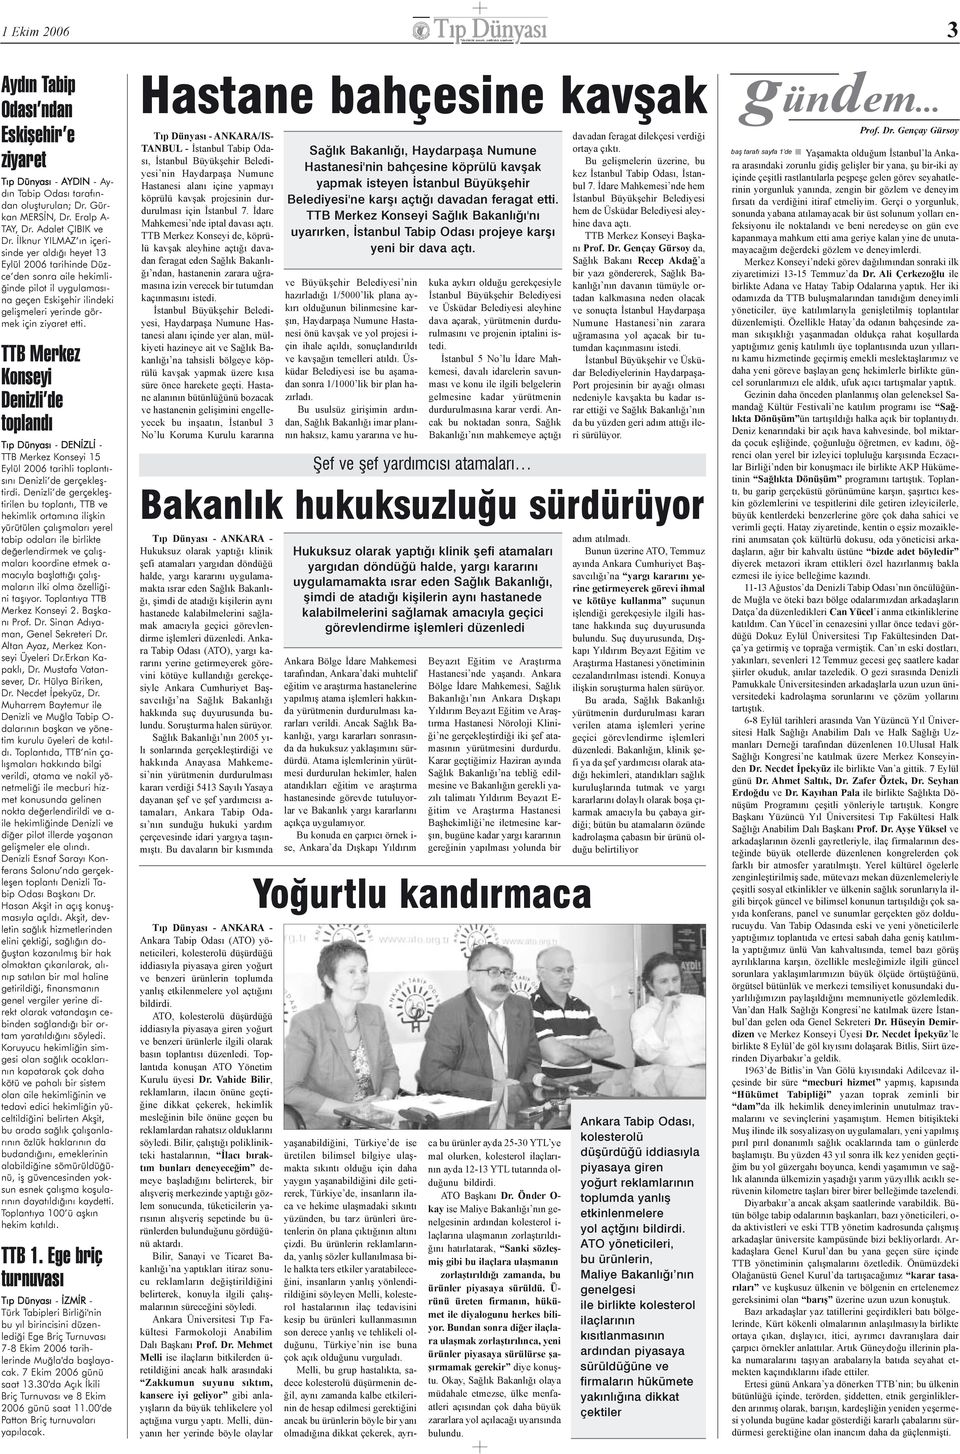 TTB Merkez Konseyi Denizli de toplandý Týp Dünyasý - DENÝZLÝ - TTB Merkez Konseyi 15 Eylül 2006 tarihli toplantýsýný Denizli de gerçekleþtirdi.